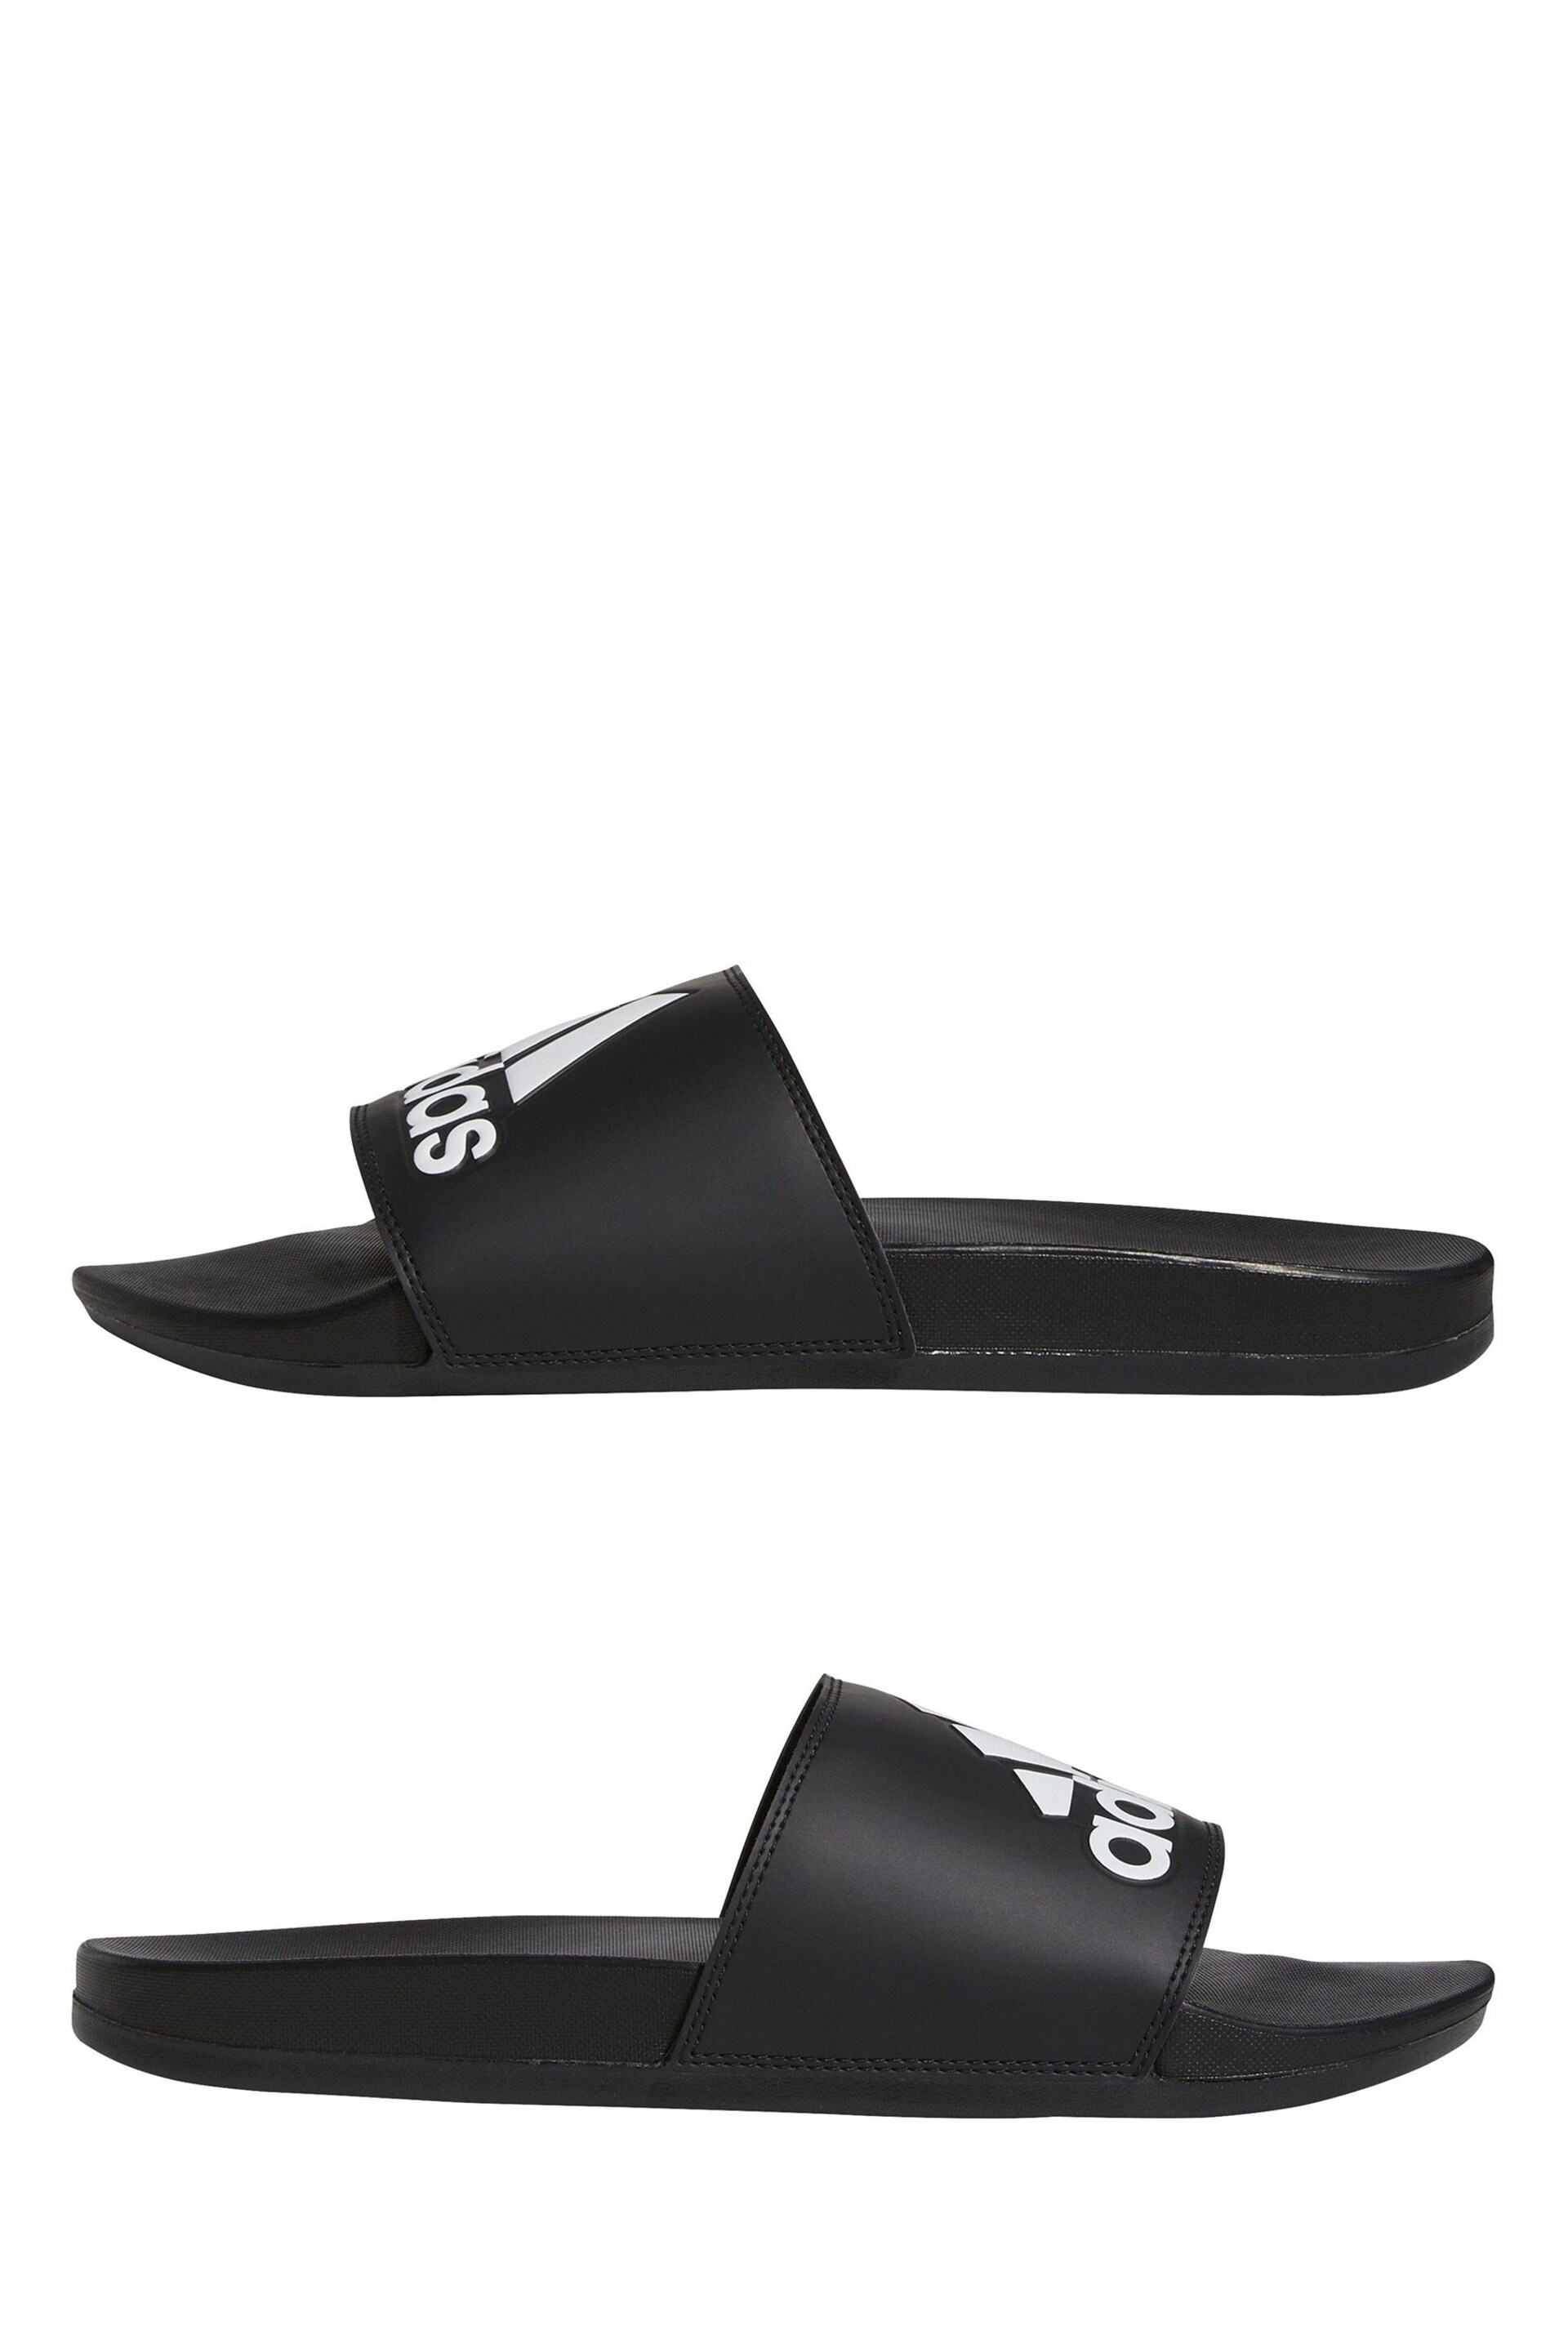 adidas Dark Black Sportswear Adilette Comfort Slides - Image 5 of 9